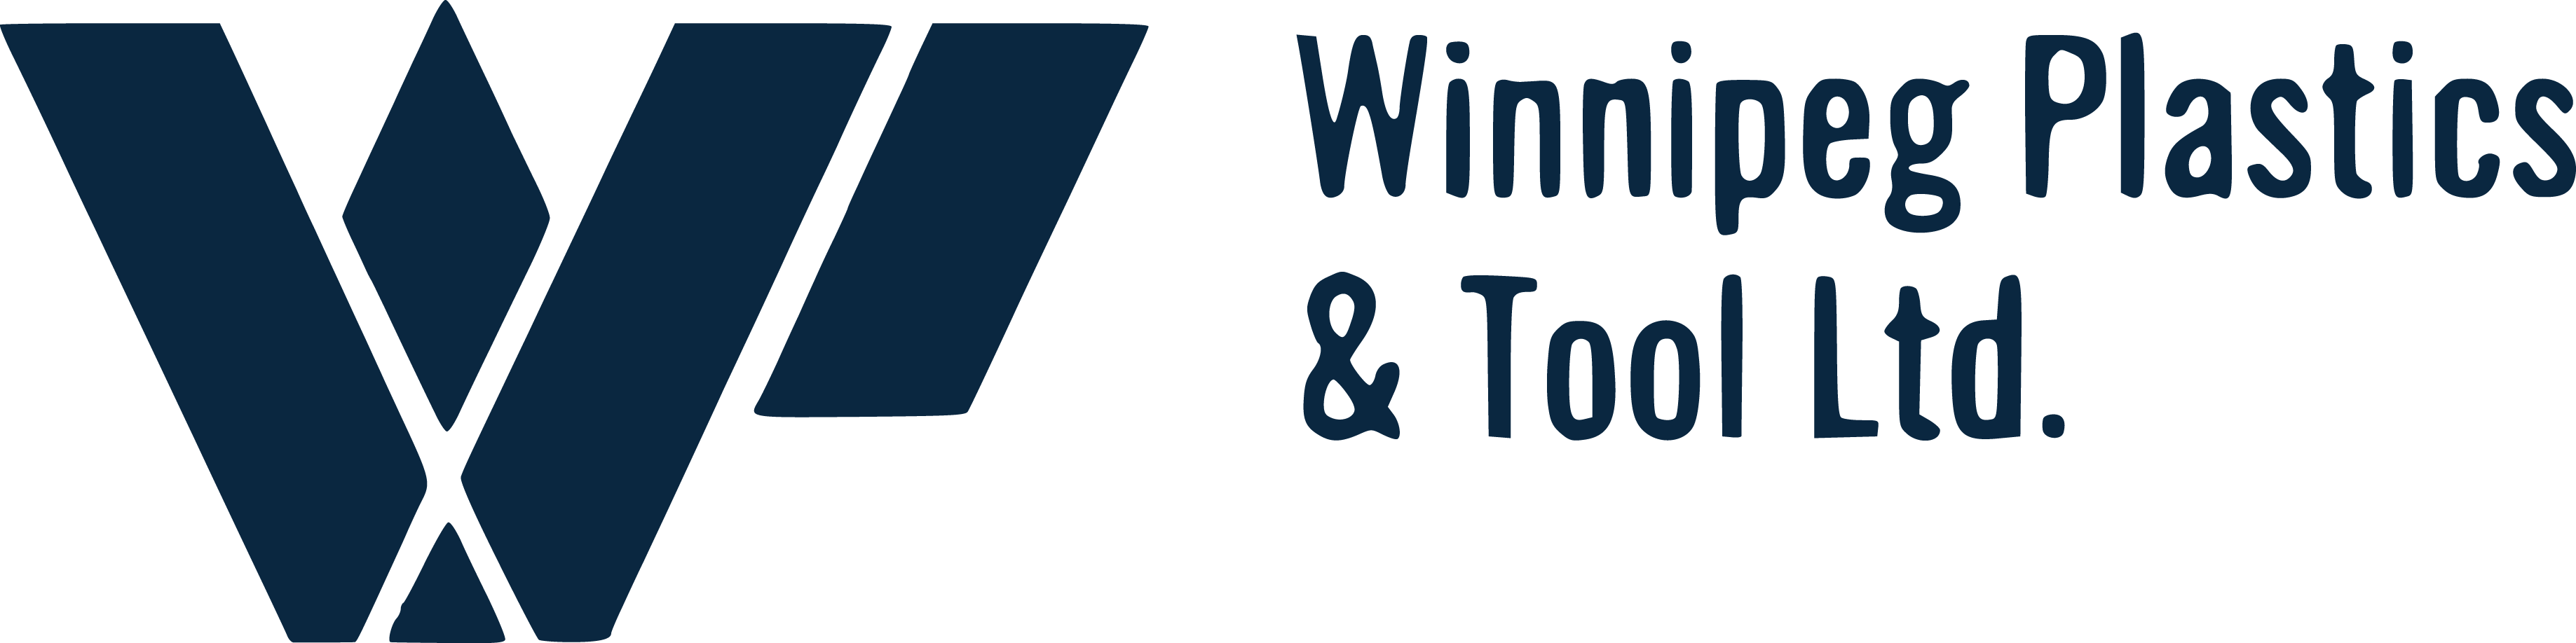 Winnipeg Plastics & Tool Ltd. Logo